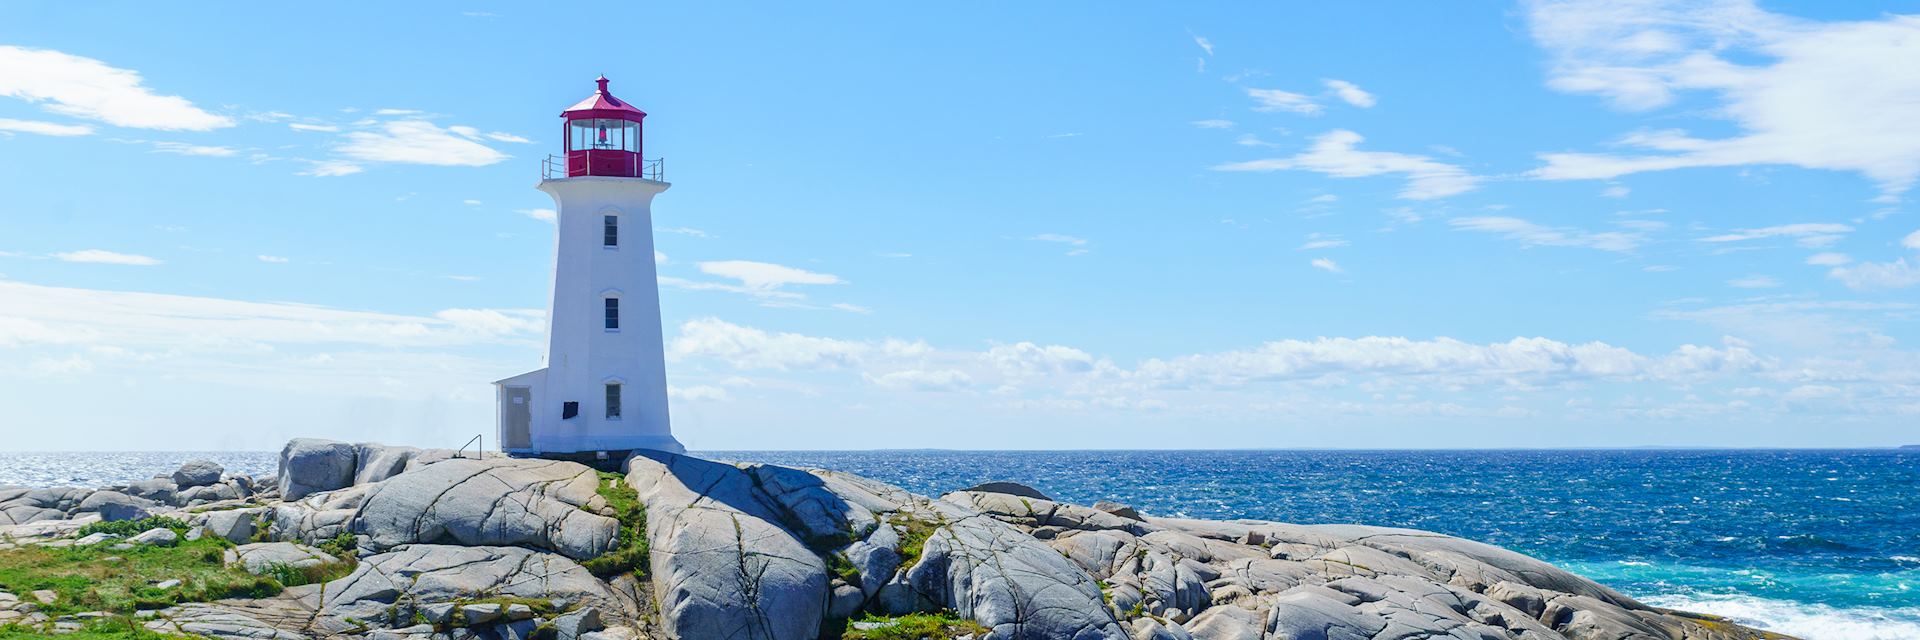 Peggy’s Cove lighthouse, Nova Scotia